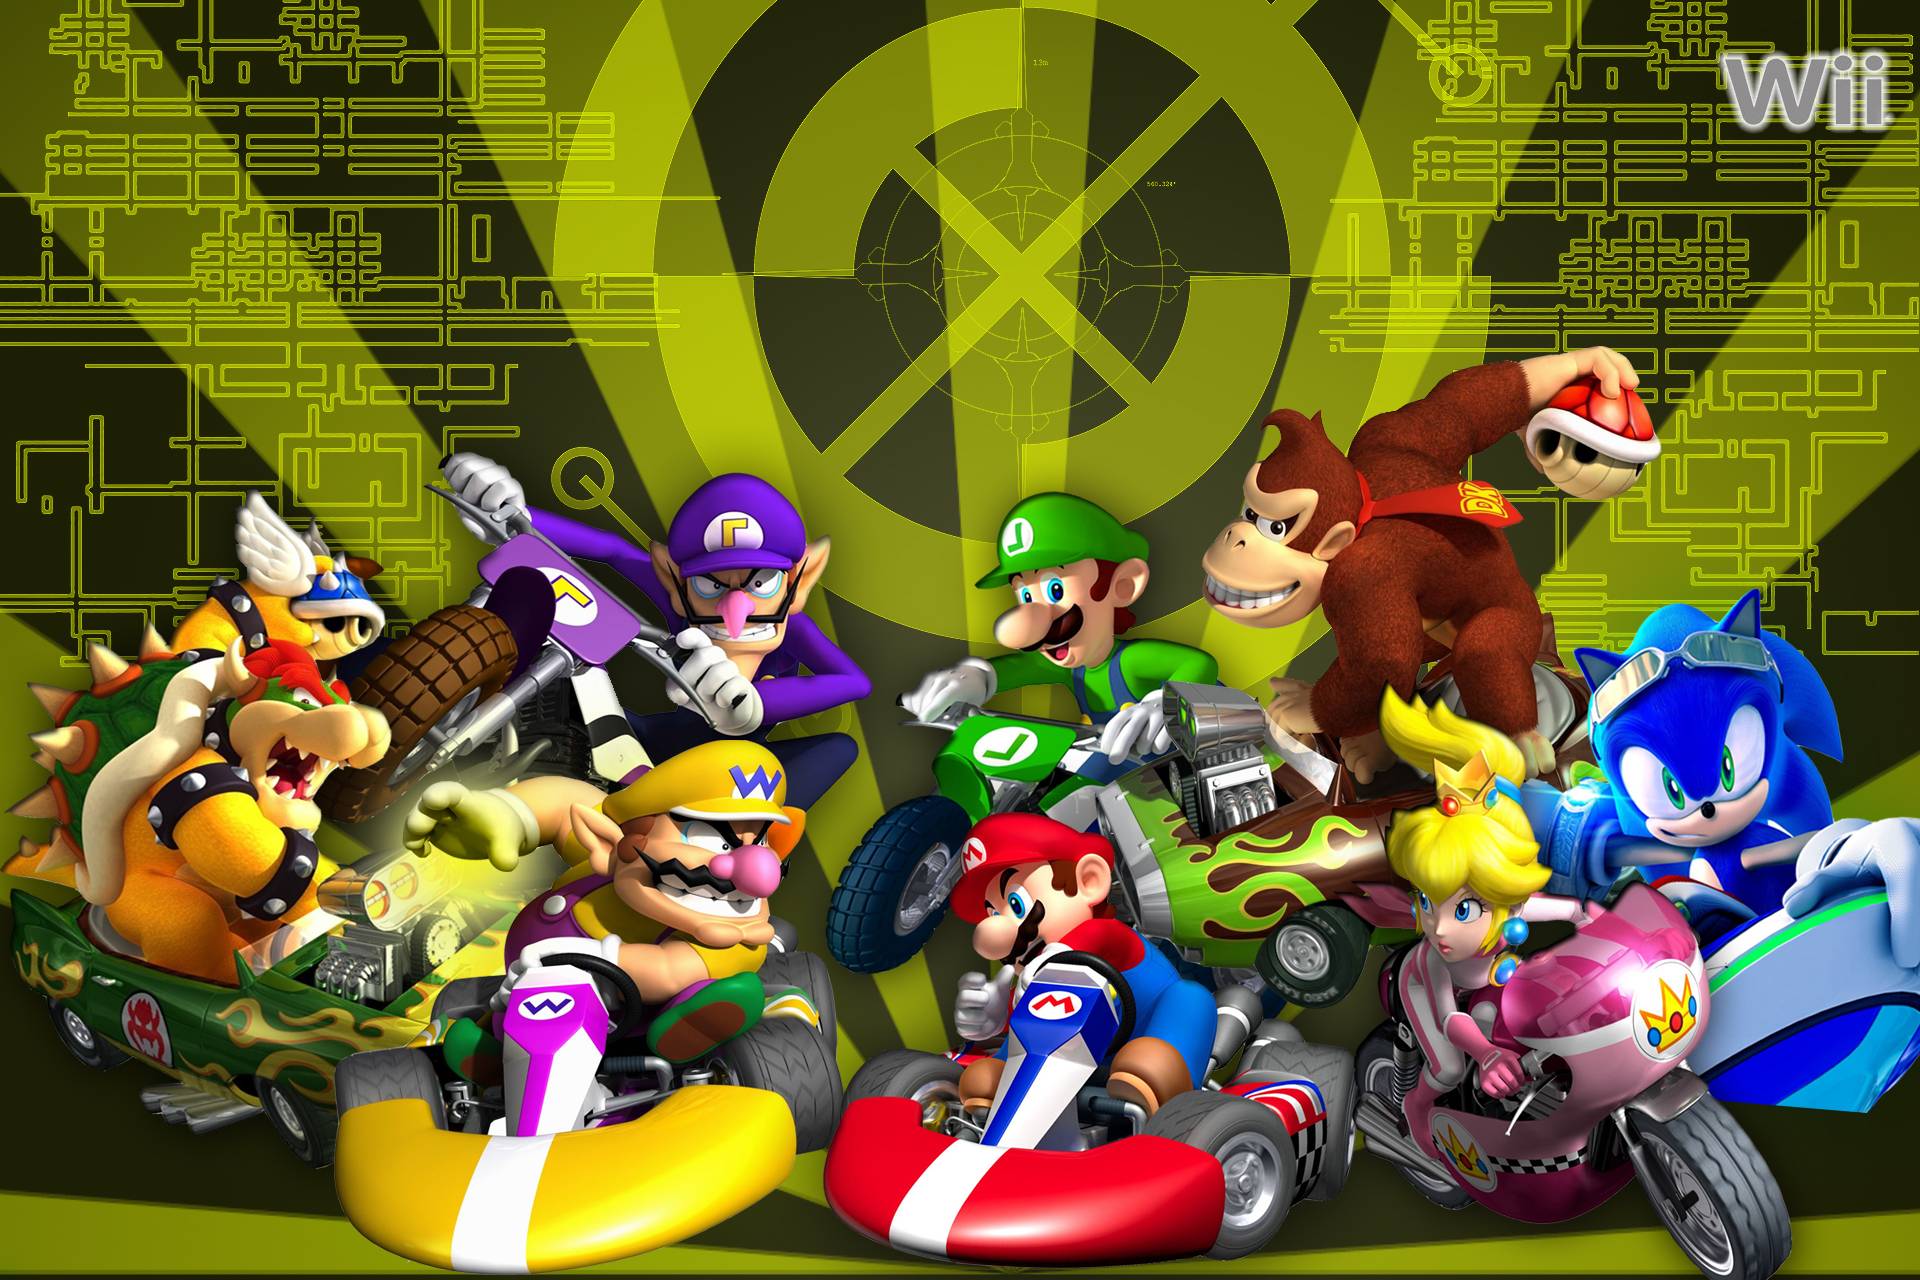 Wallpaper: Personajes de Mario Kart Wii